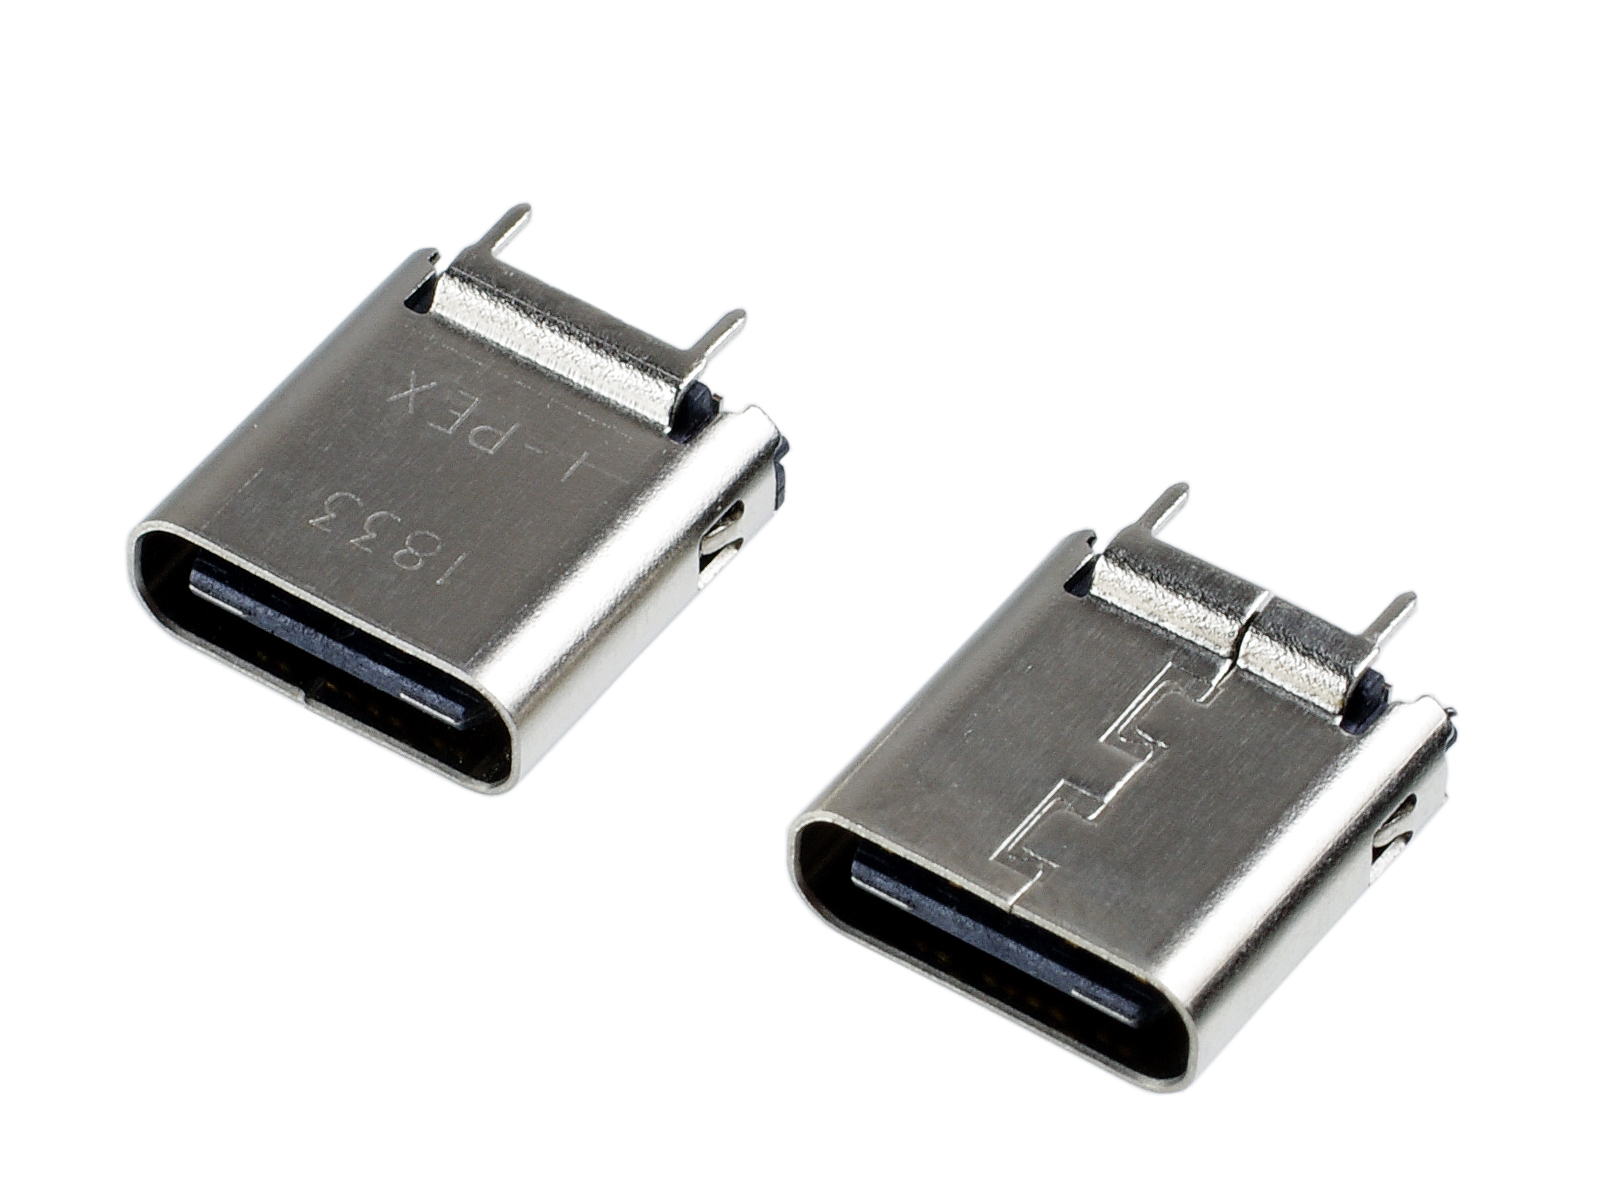 USB connectors from I-PEX